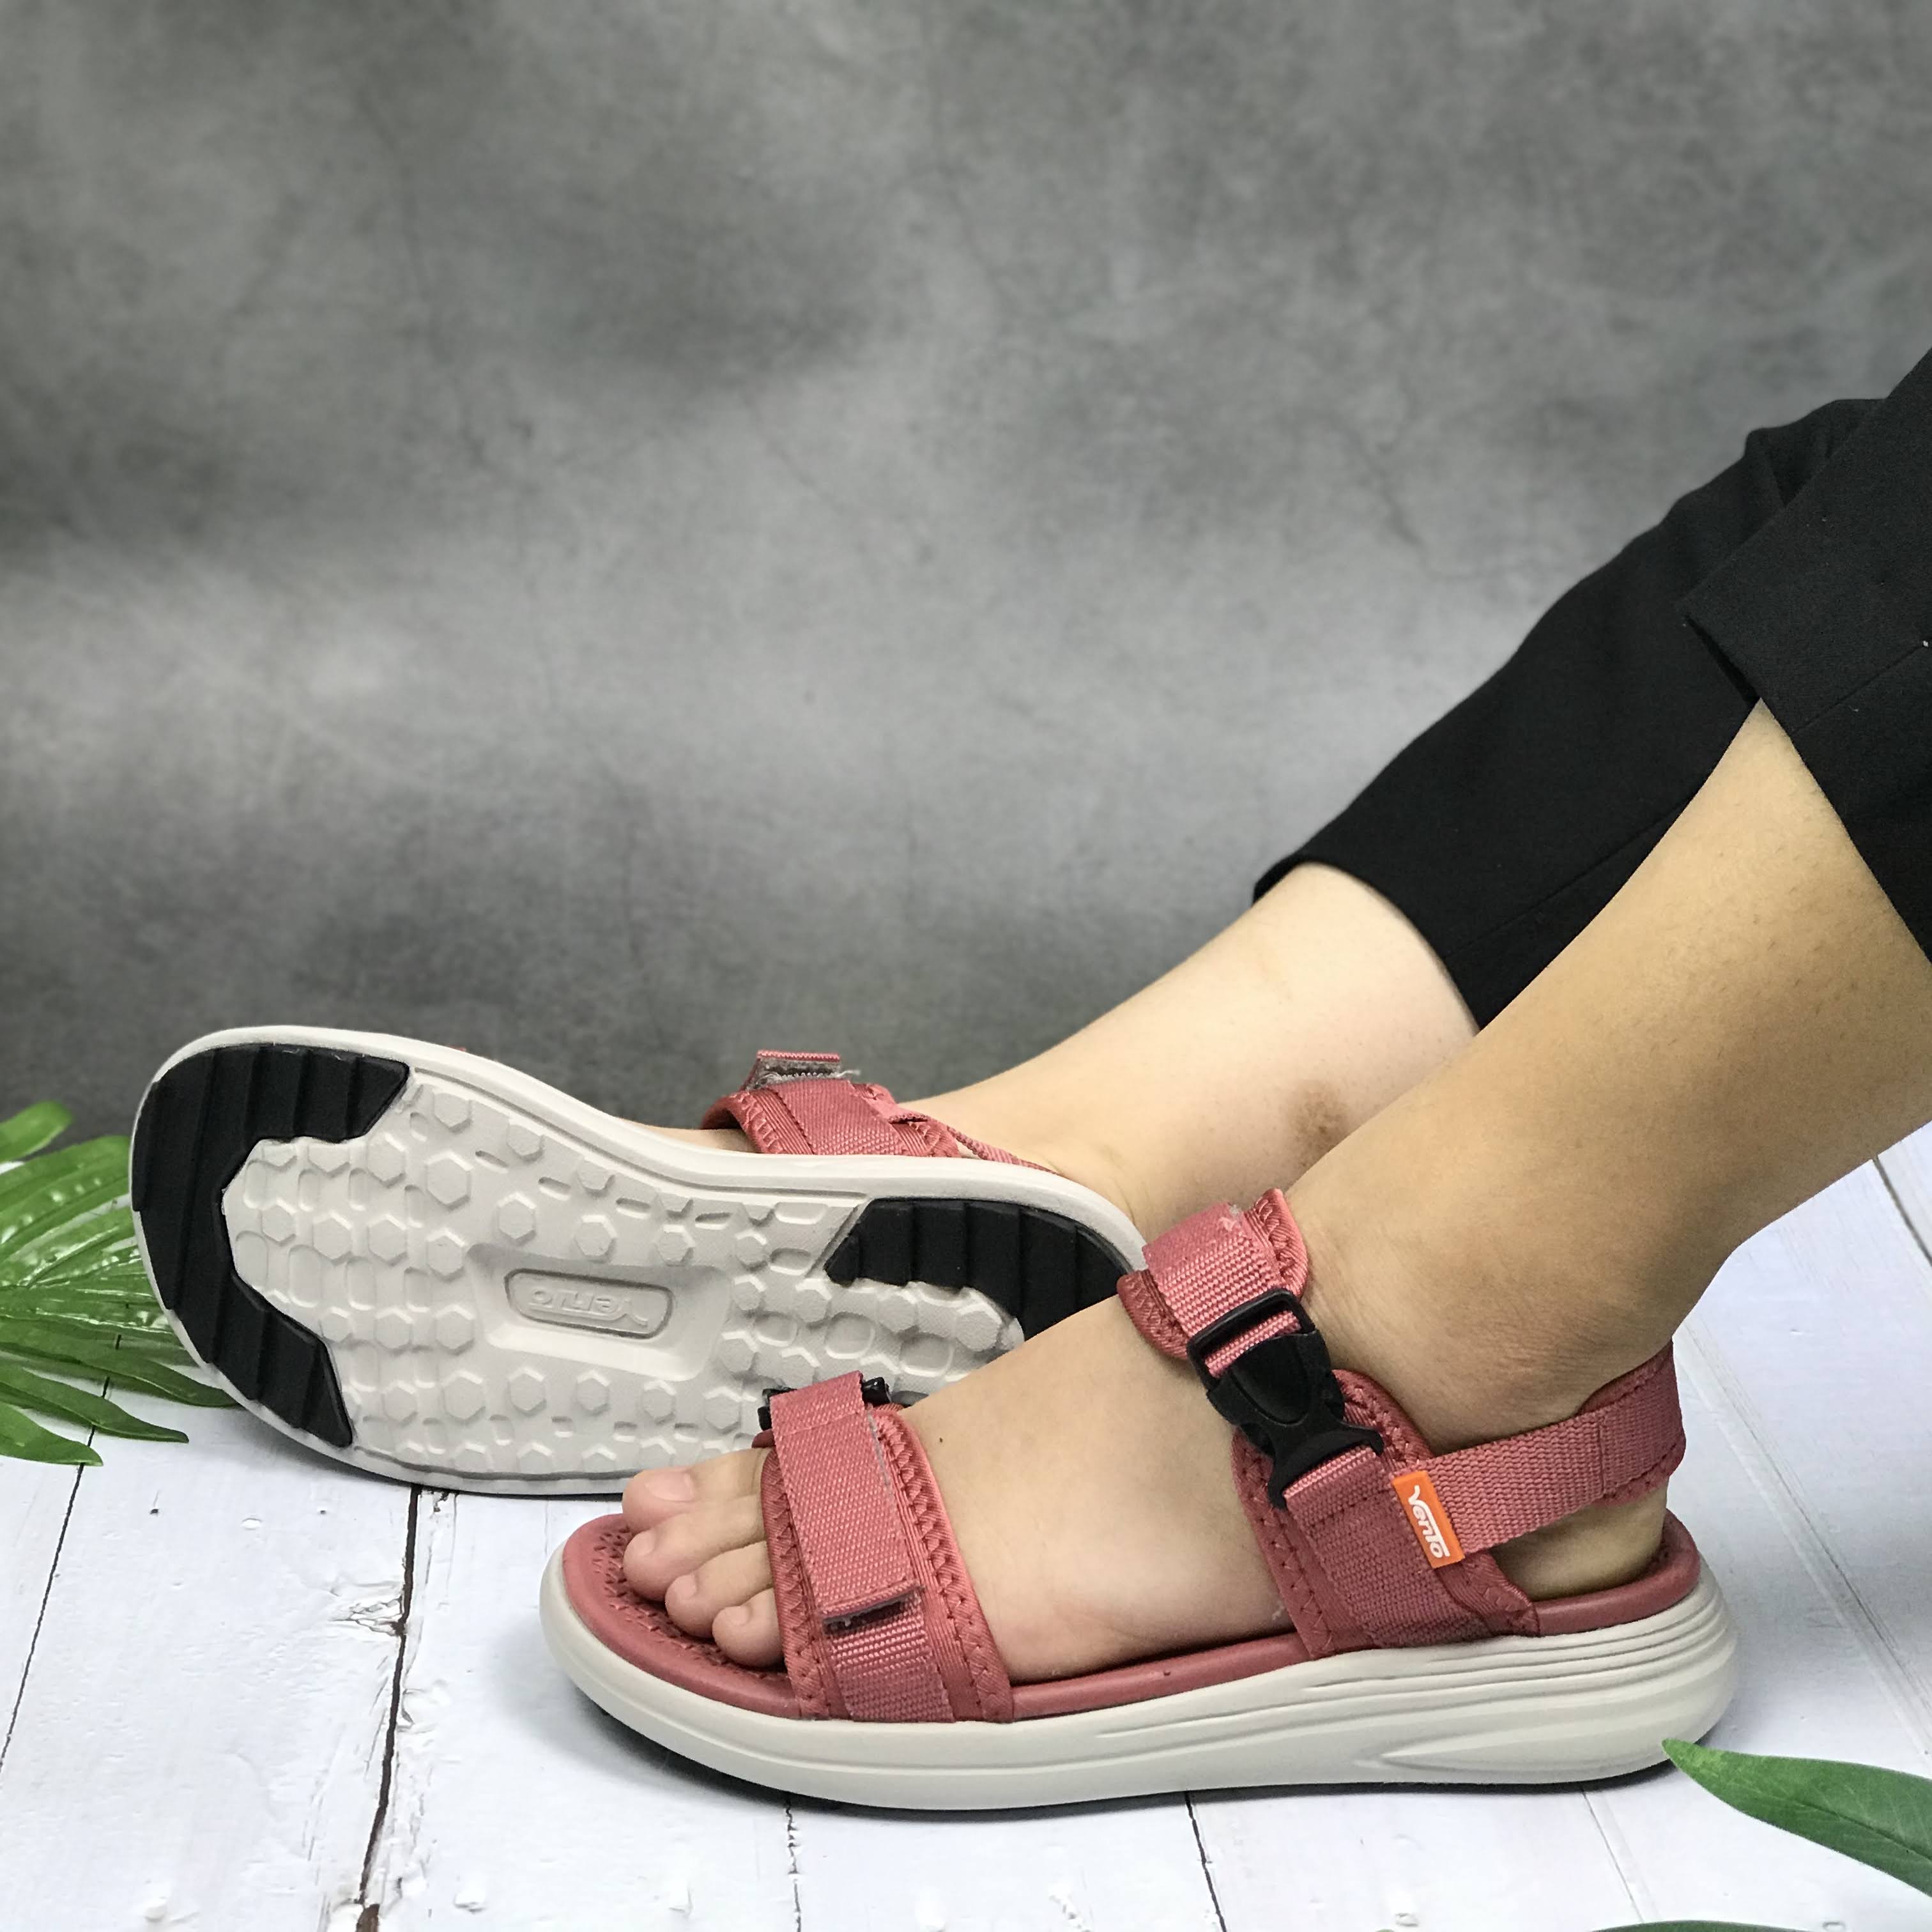 Giày sandal nữ siêu nhẹ hiệu Vento thích hợp mang đi học NB66P